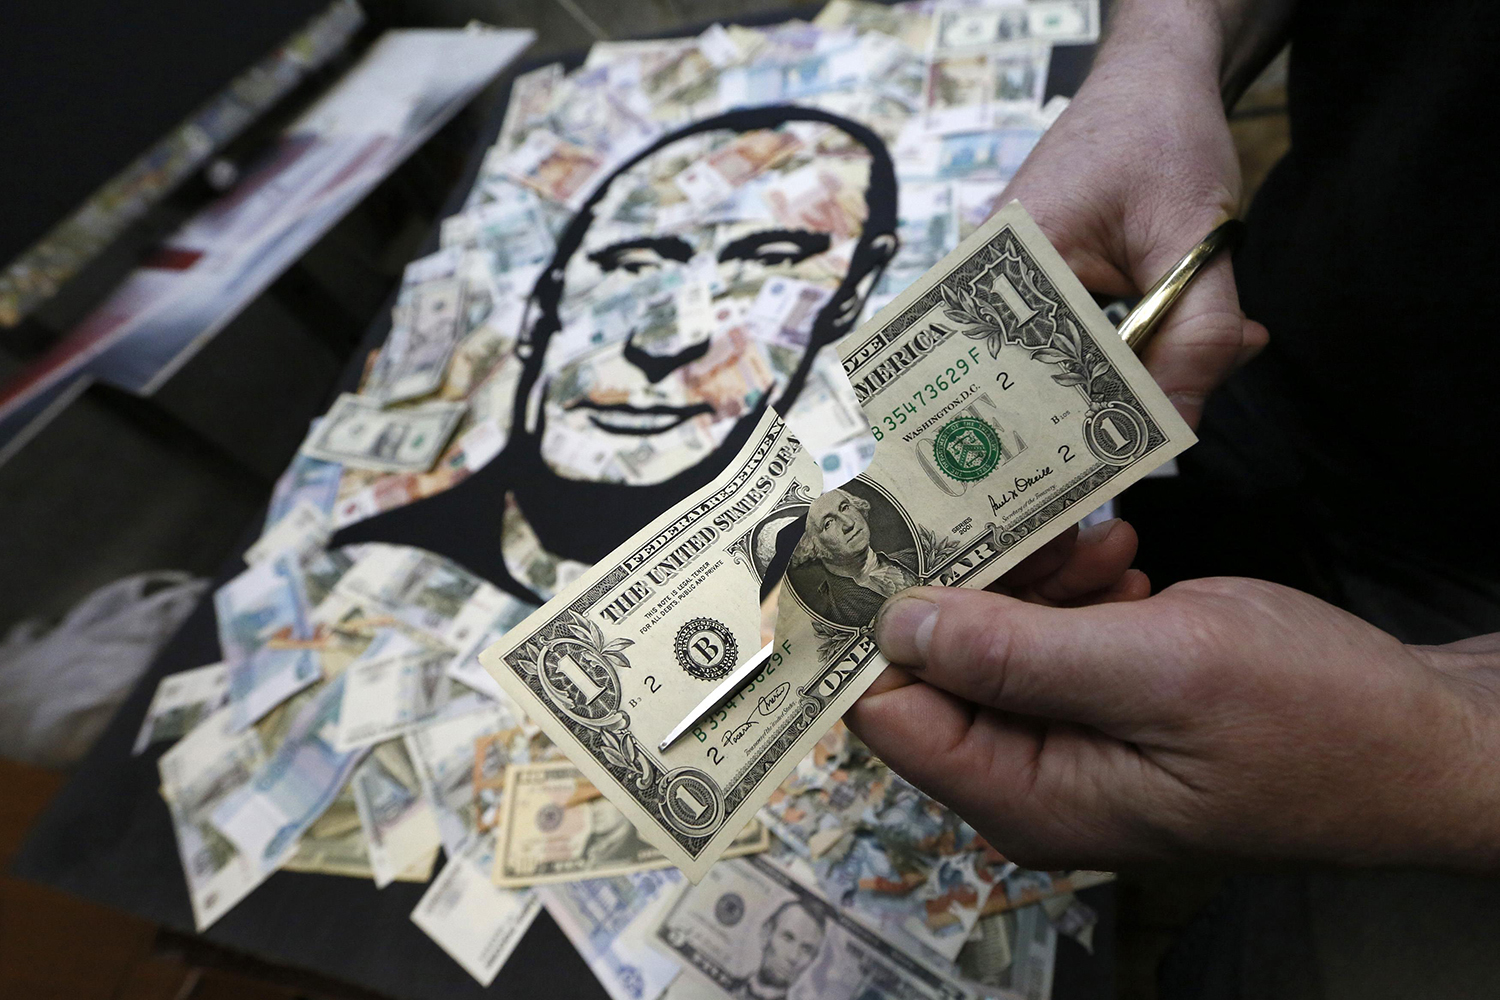 Vladimir Putin a dólares estadounidenses